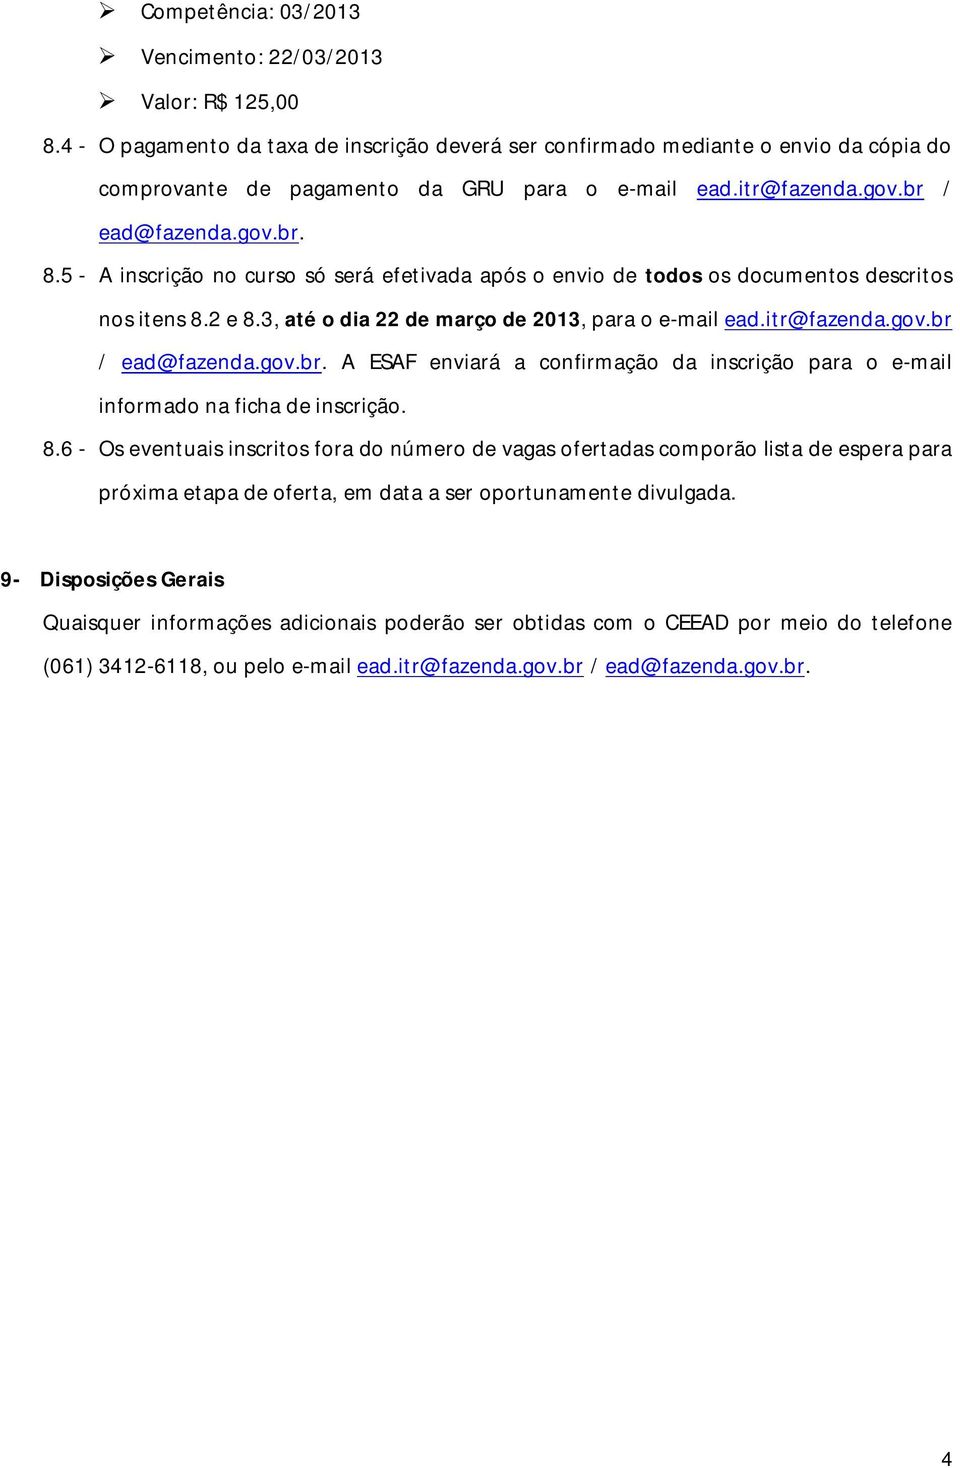 5 - A inscrição no curso só será efetivada após o envio de todos os documentos descritos nos itens 8.2 e 8.3, até o dia 22 de março de 2013, para o e-mail ead.itr@fazenda.gov.br 